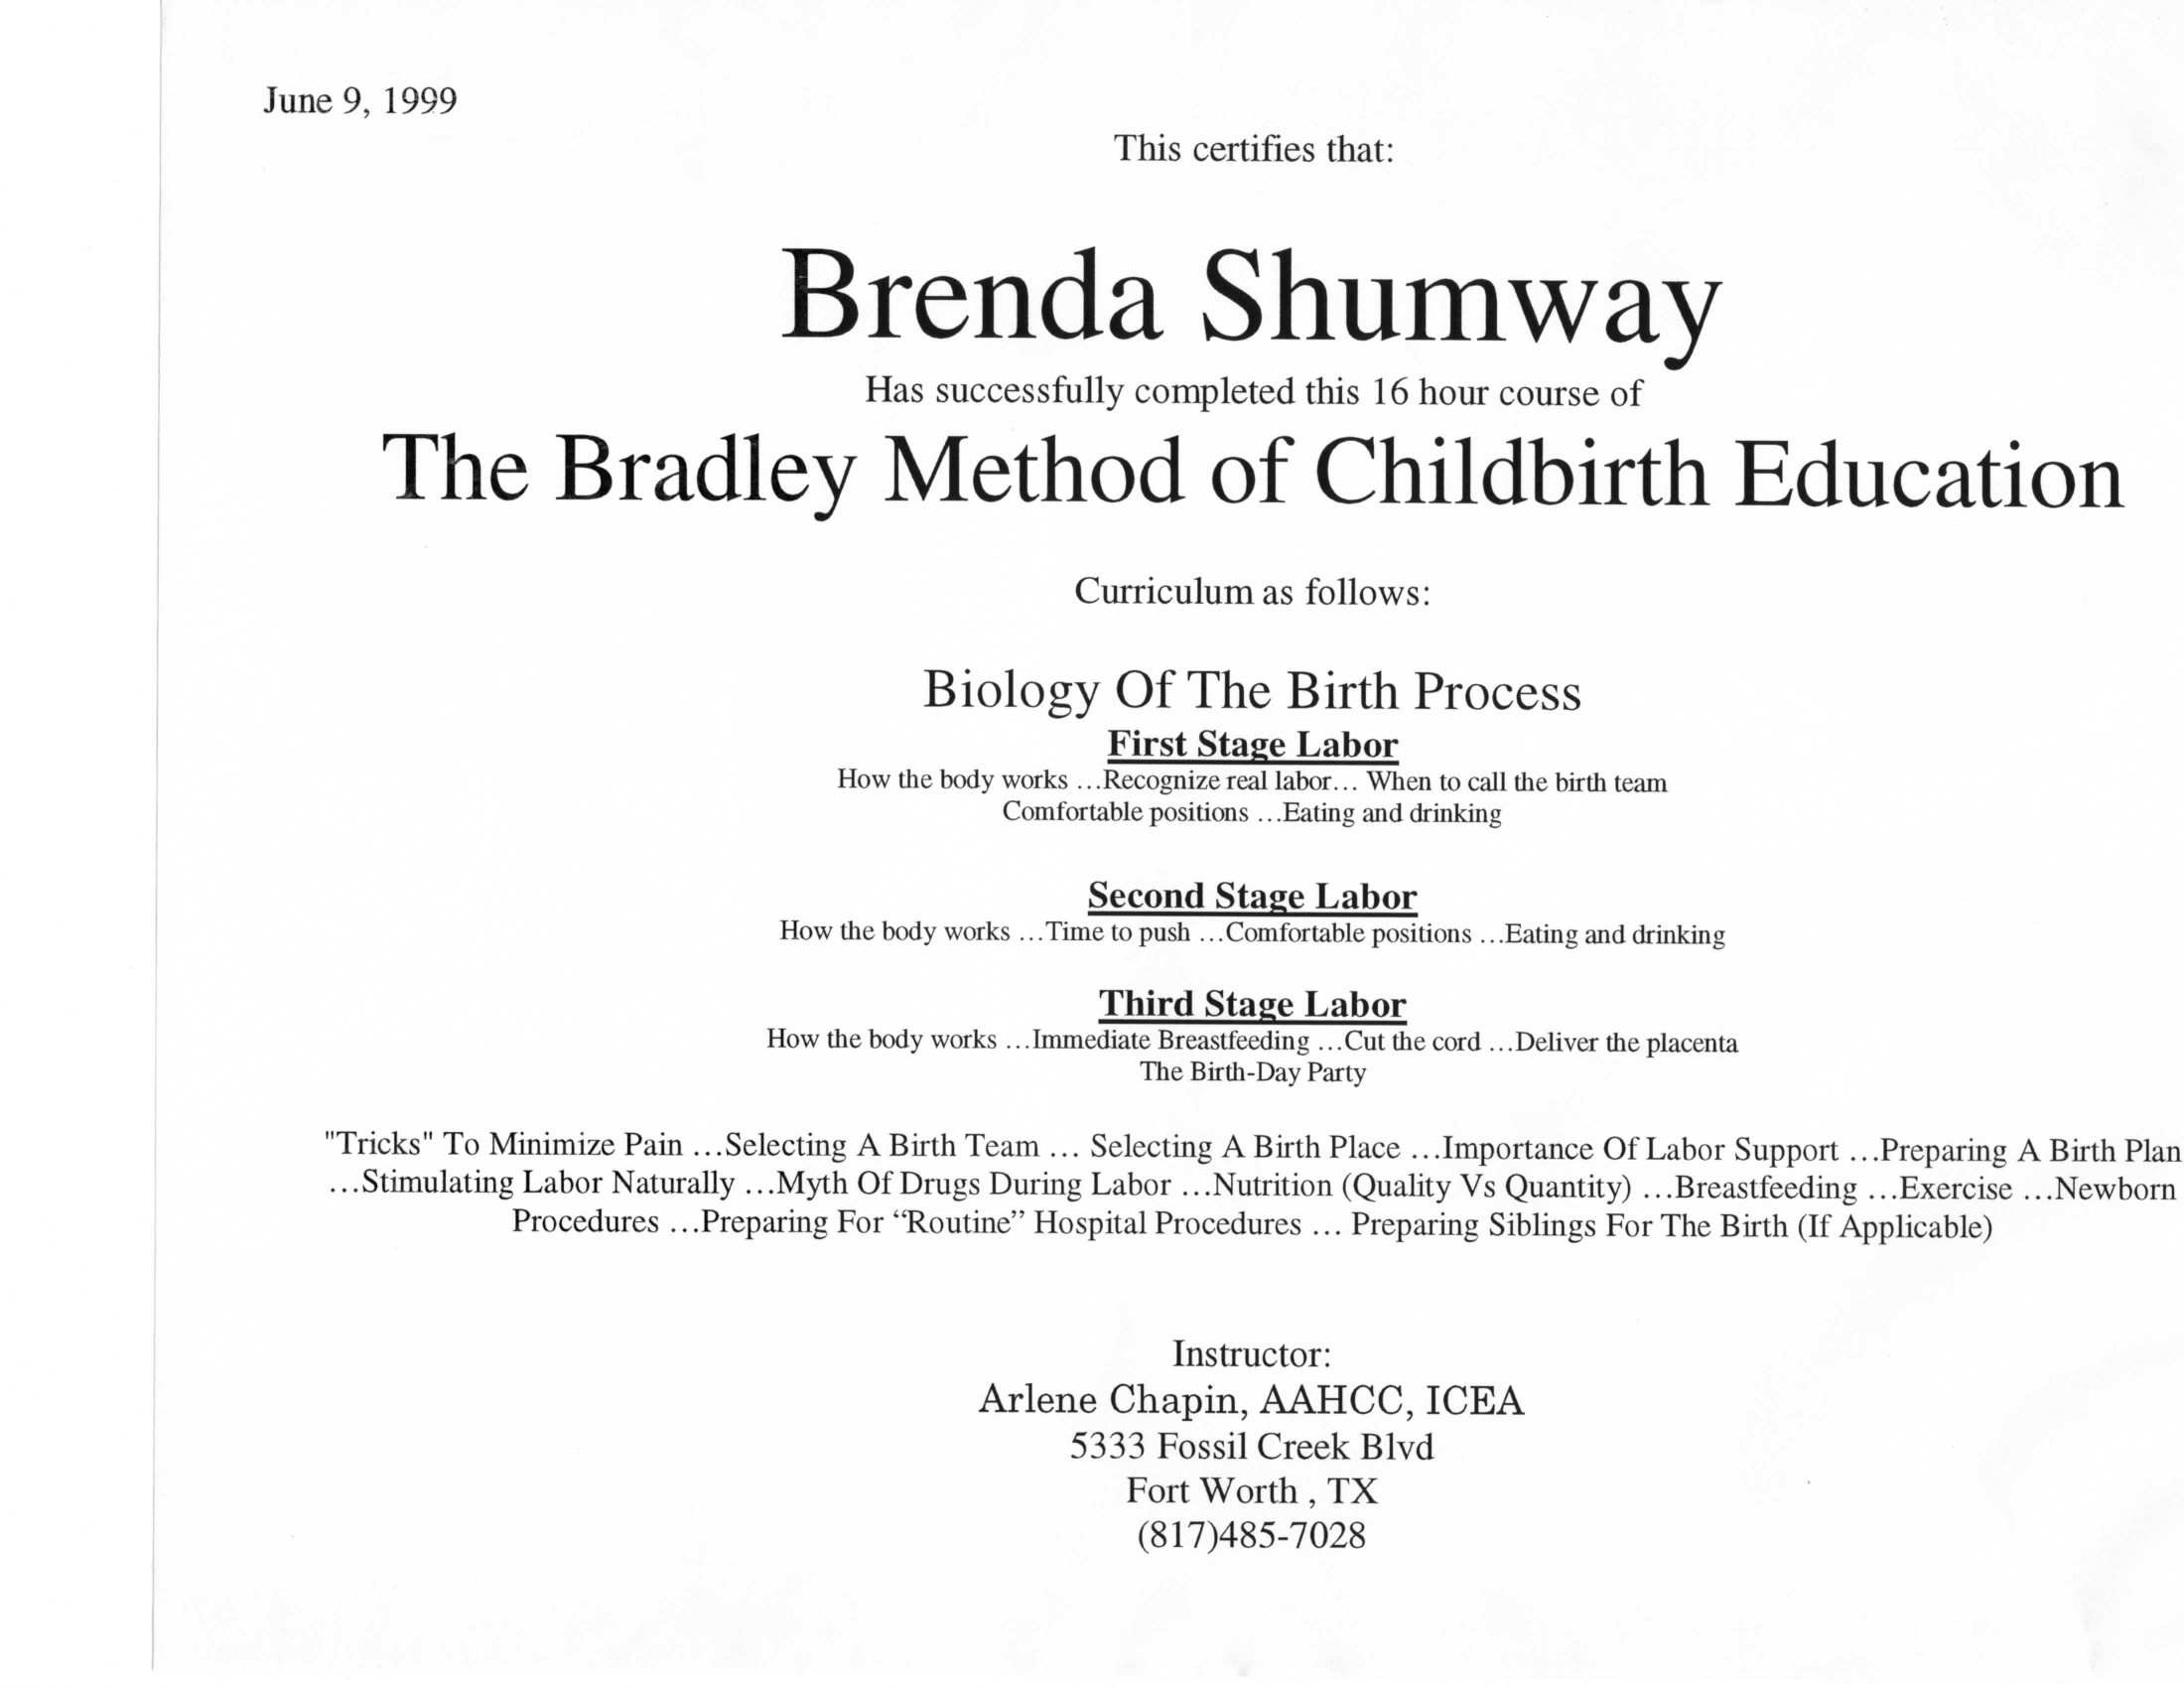 Bradley Certificate June 9 1999-1.png